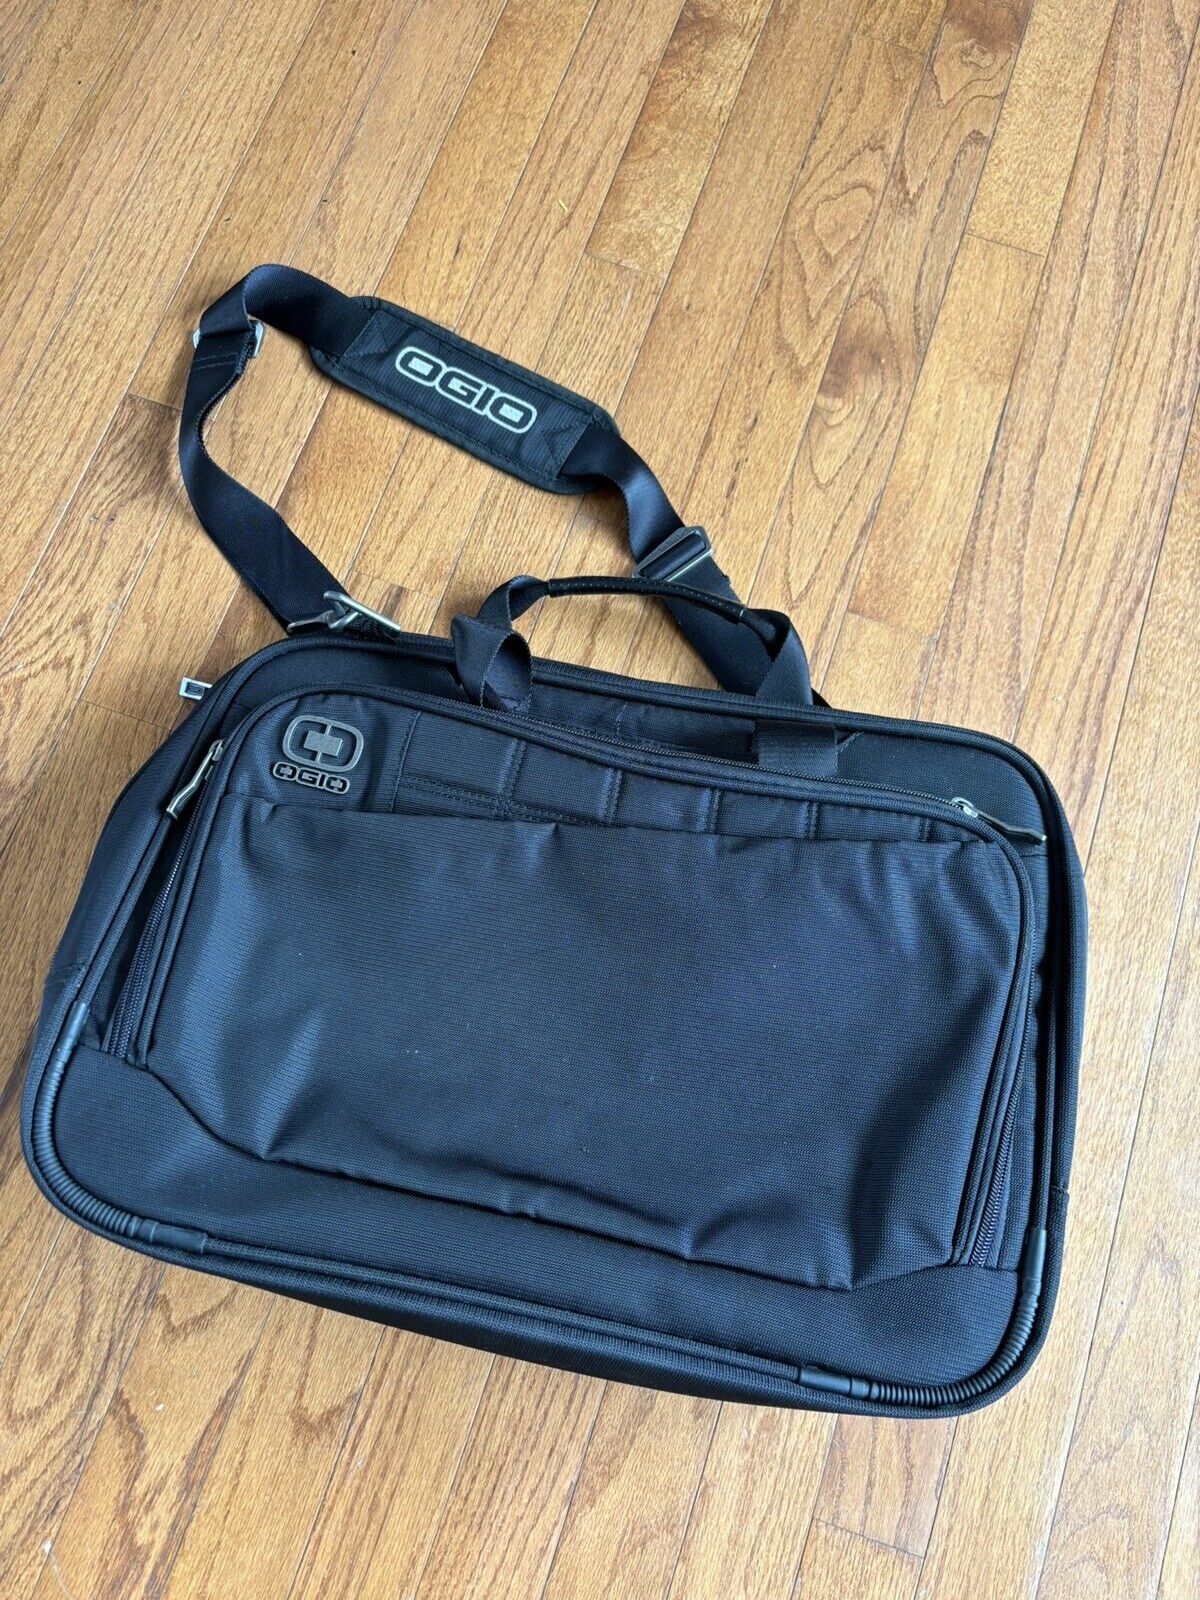 OGIO Laptop Bag Black Shoulder Strap Carrying Case Messenger